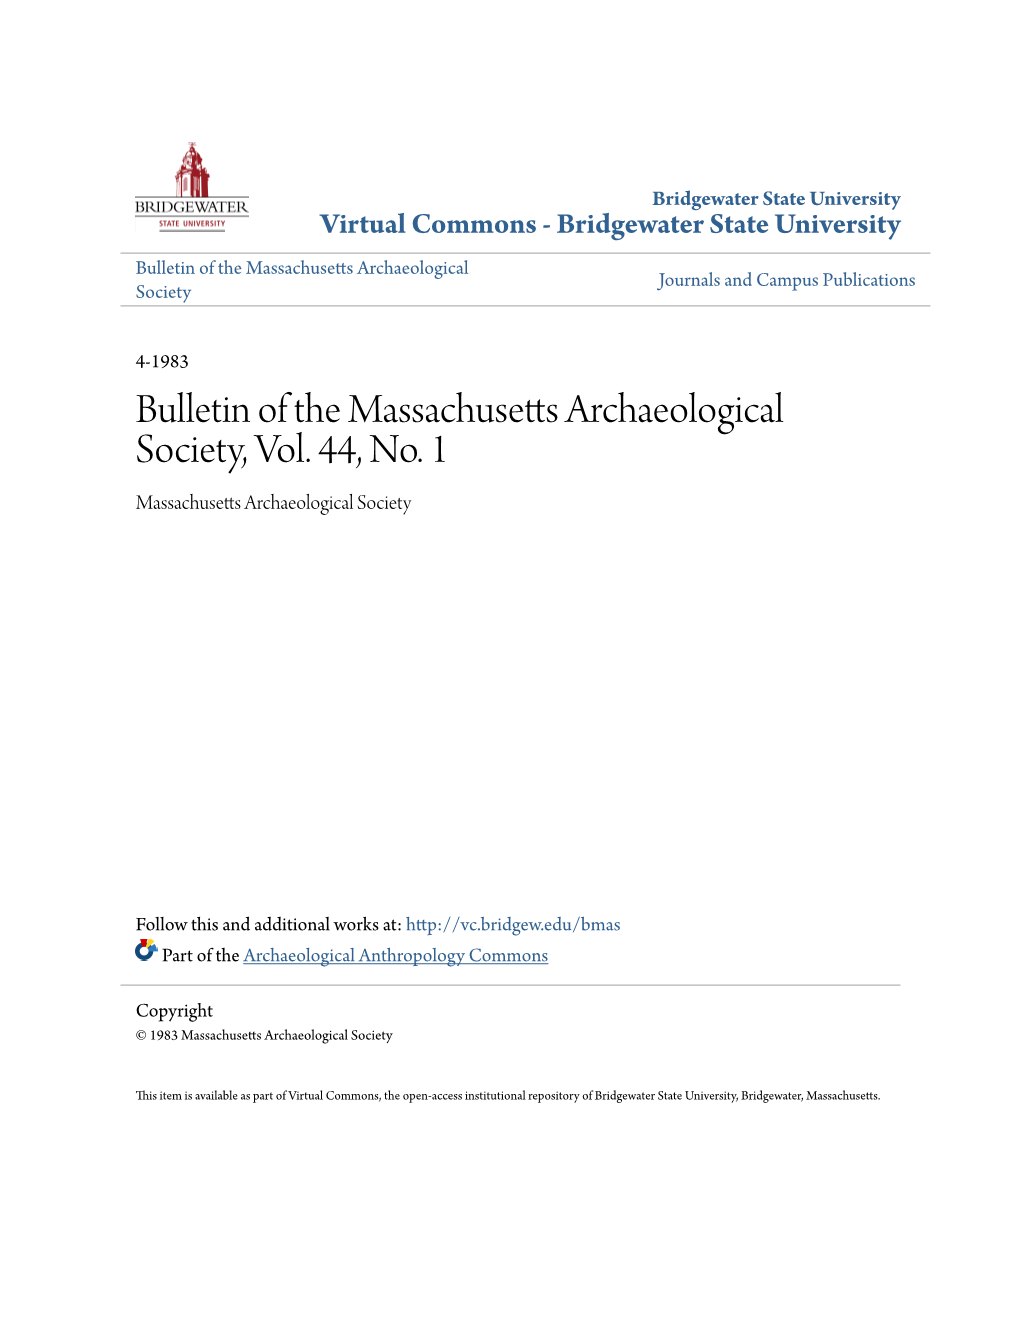 Bulletin of the Massachusetts Archaeological Society, Vol. 44, No. 1 Massachusetts Archaeological Society